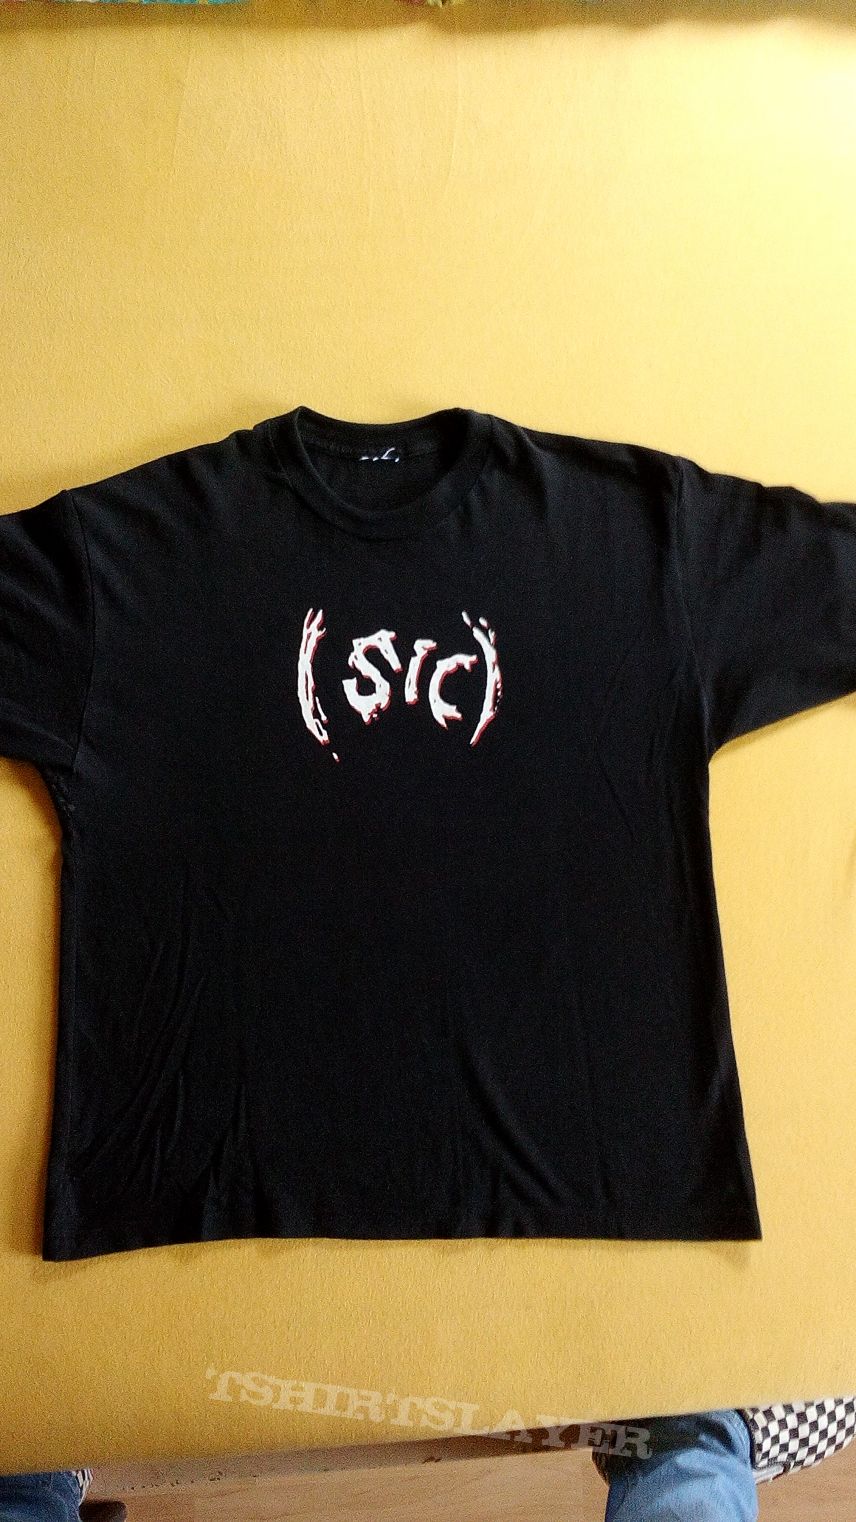 Slipknot (Sic) Shirt